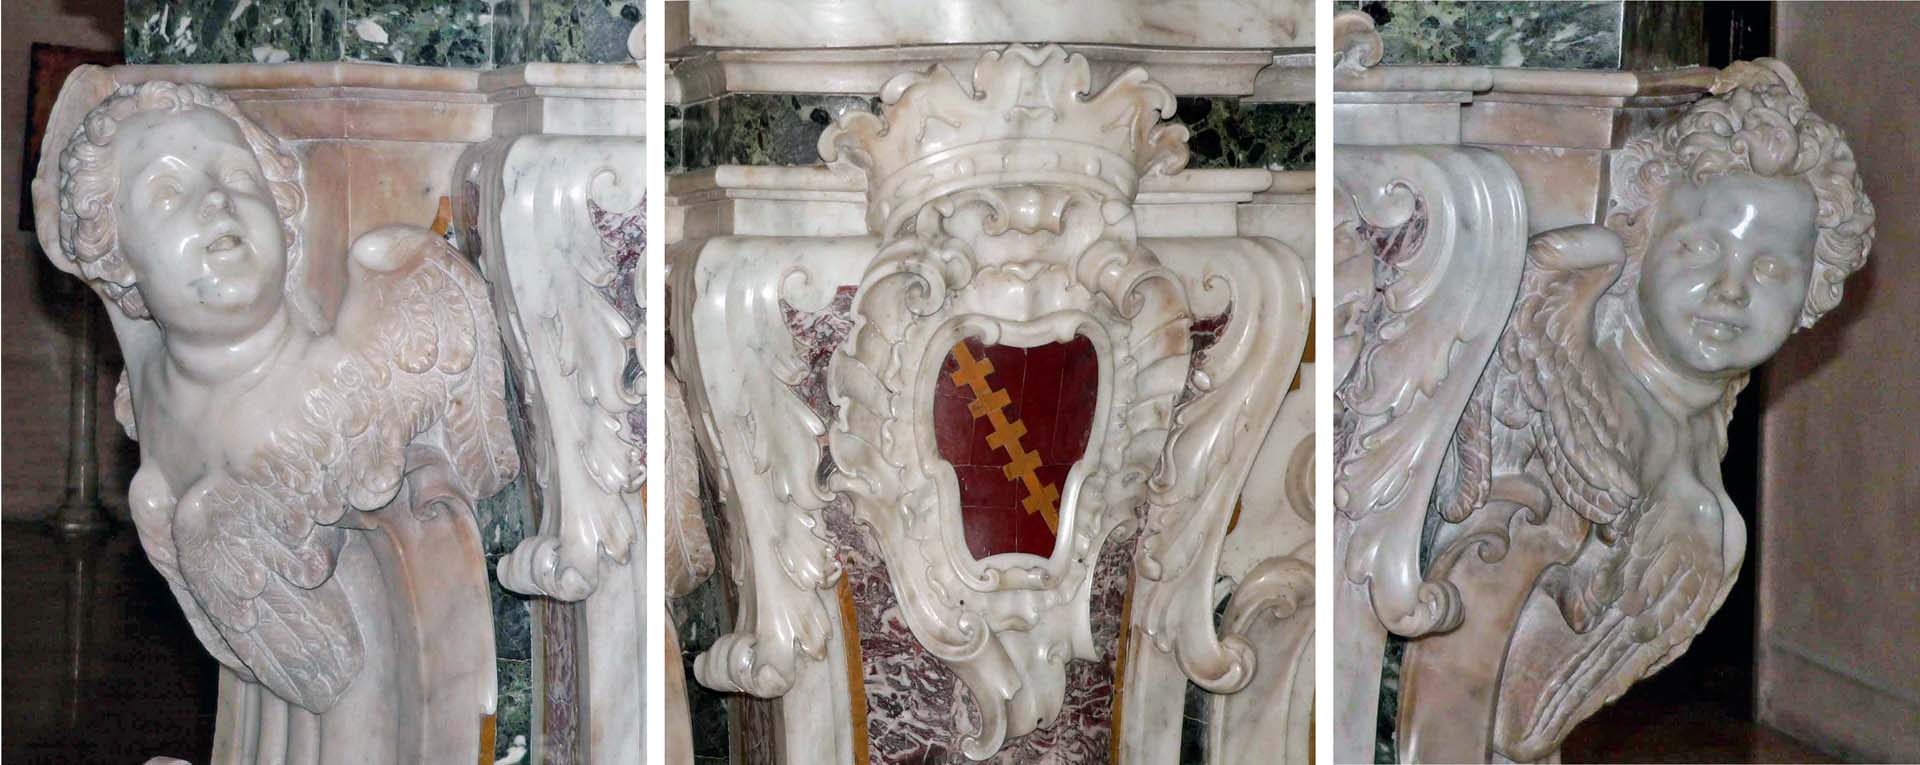 altare maggiore: sculture laterali al paliotto 